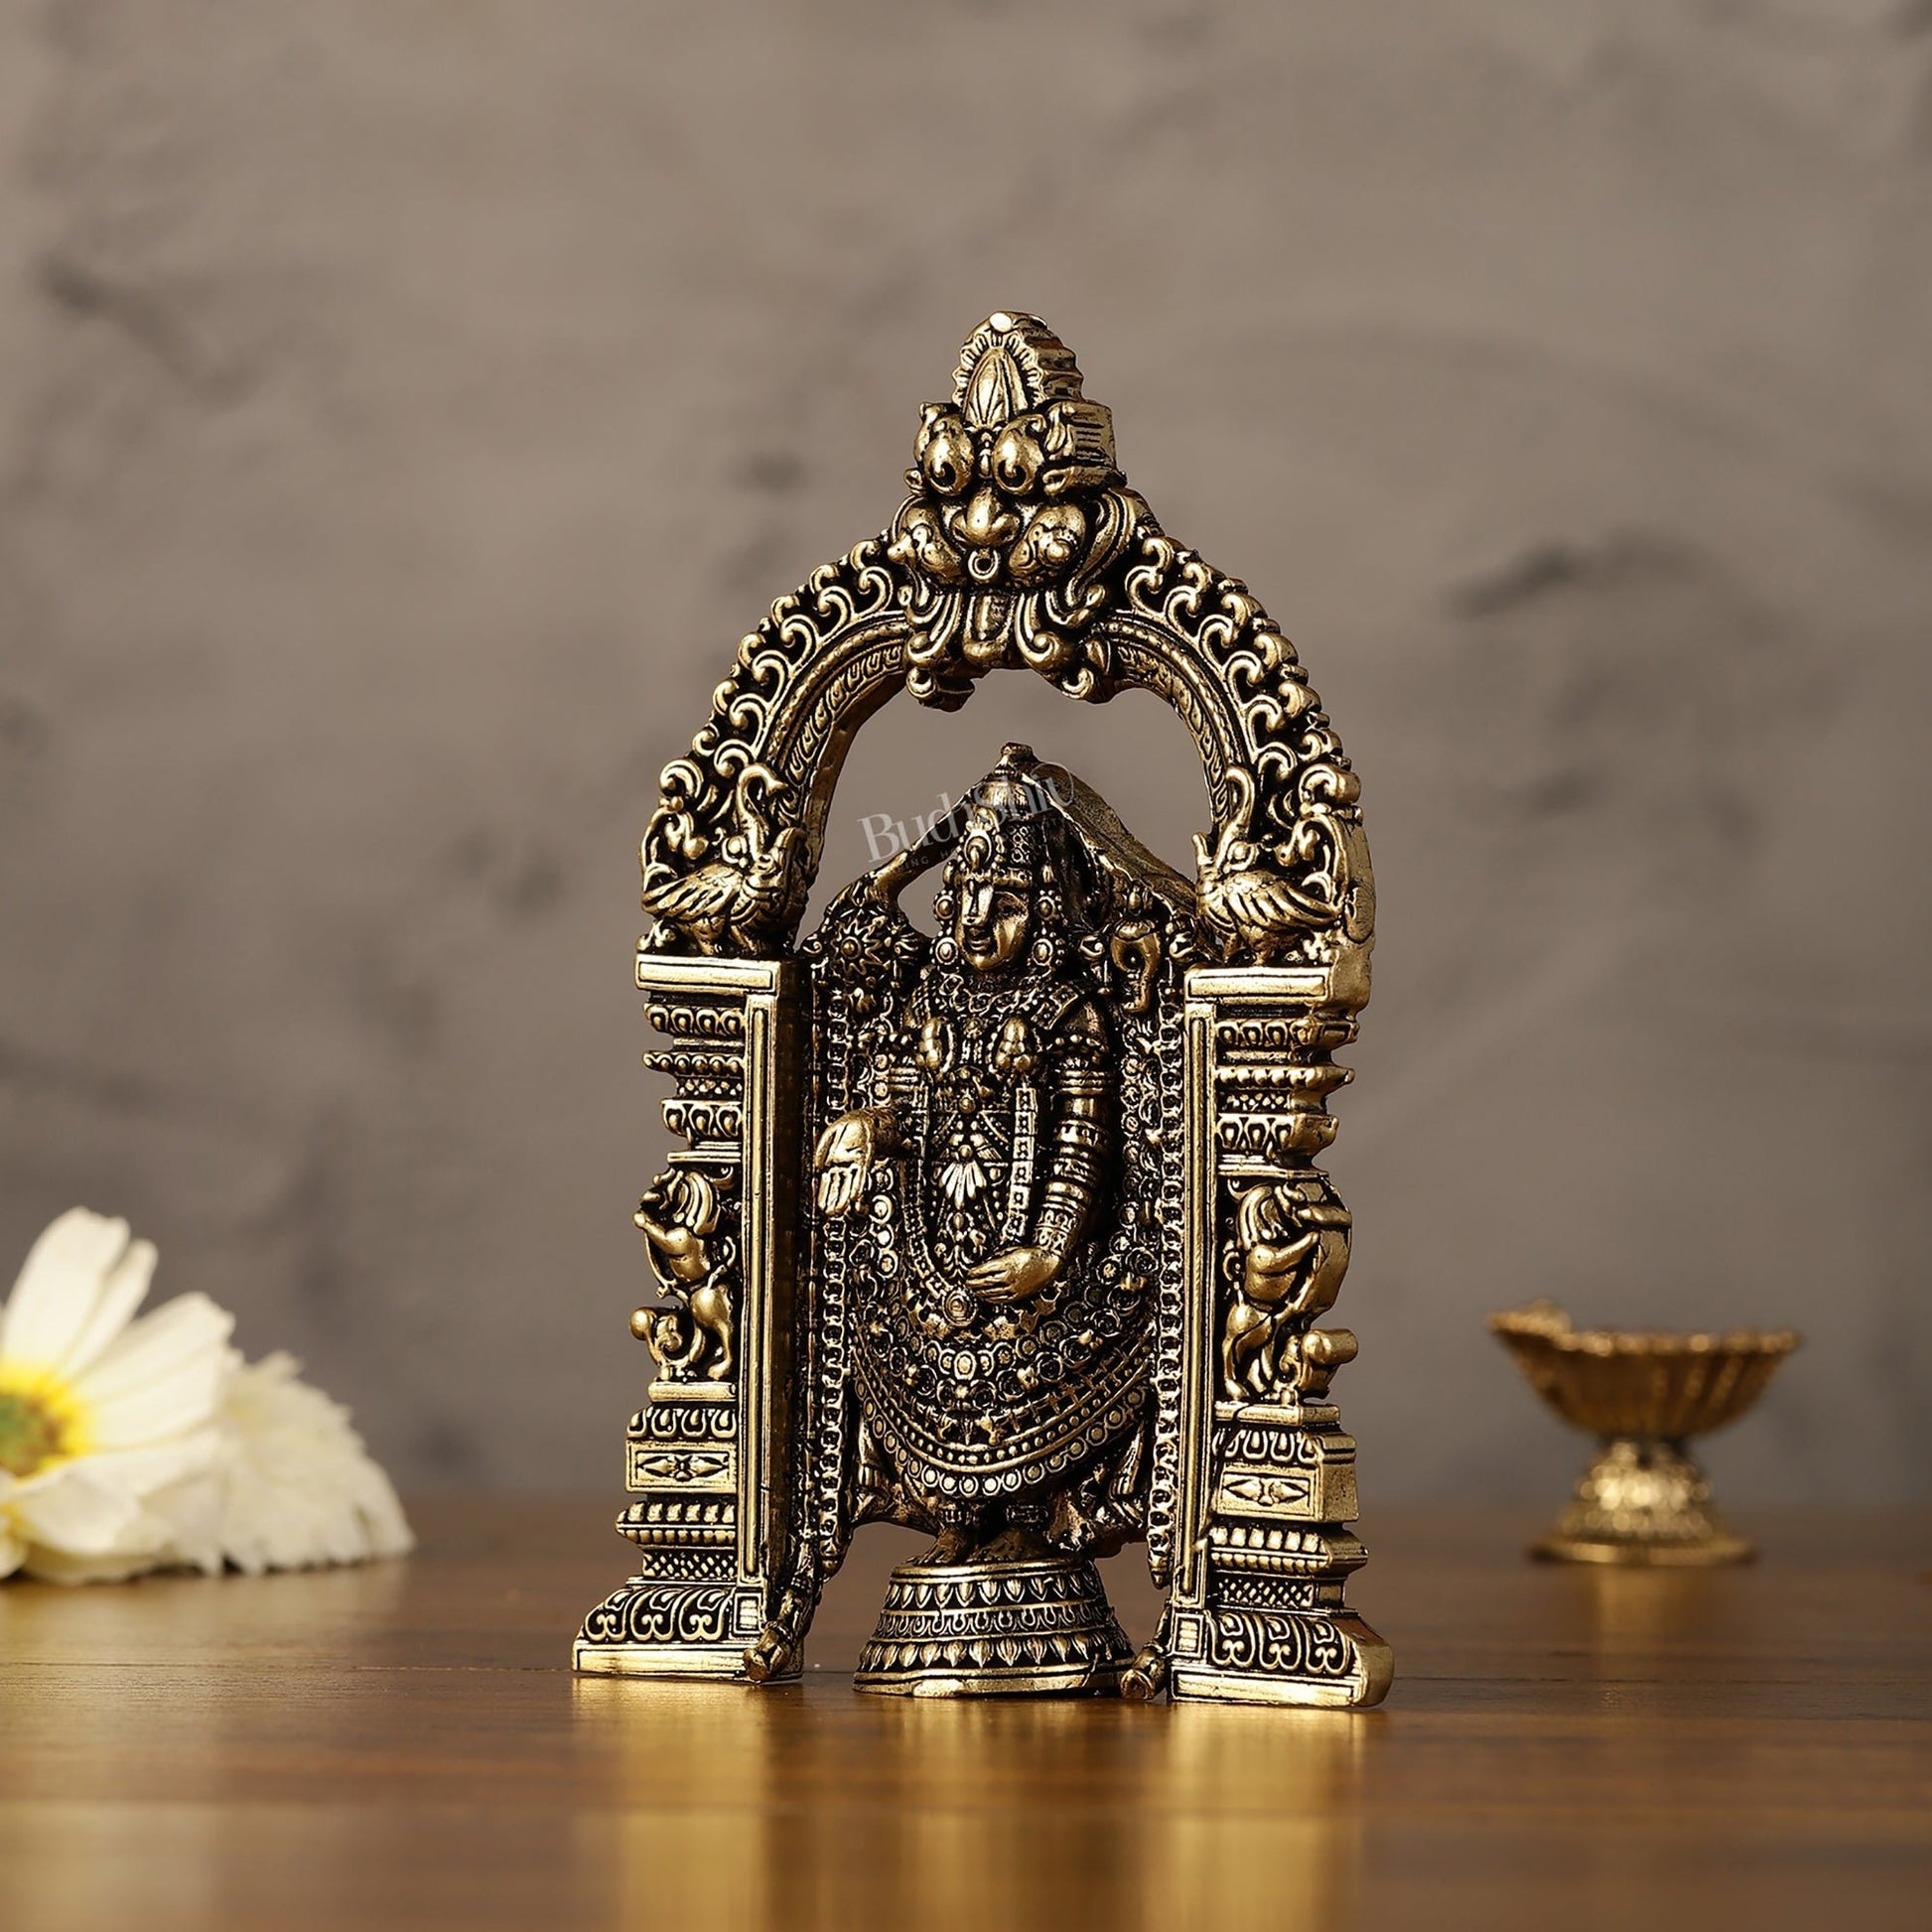 Superfine Brass Tirupati Balaji Statue - 6" - Budhshiv.com